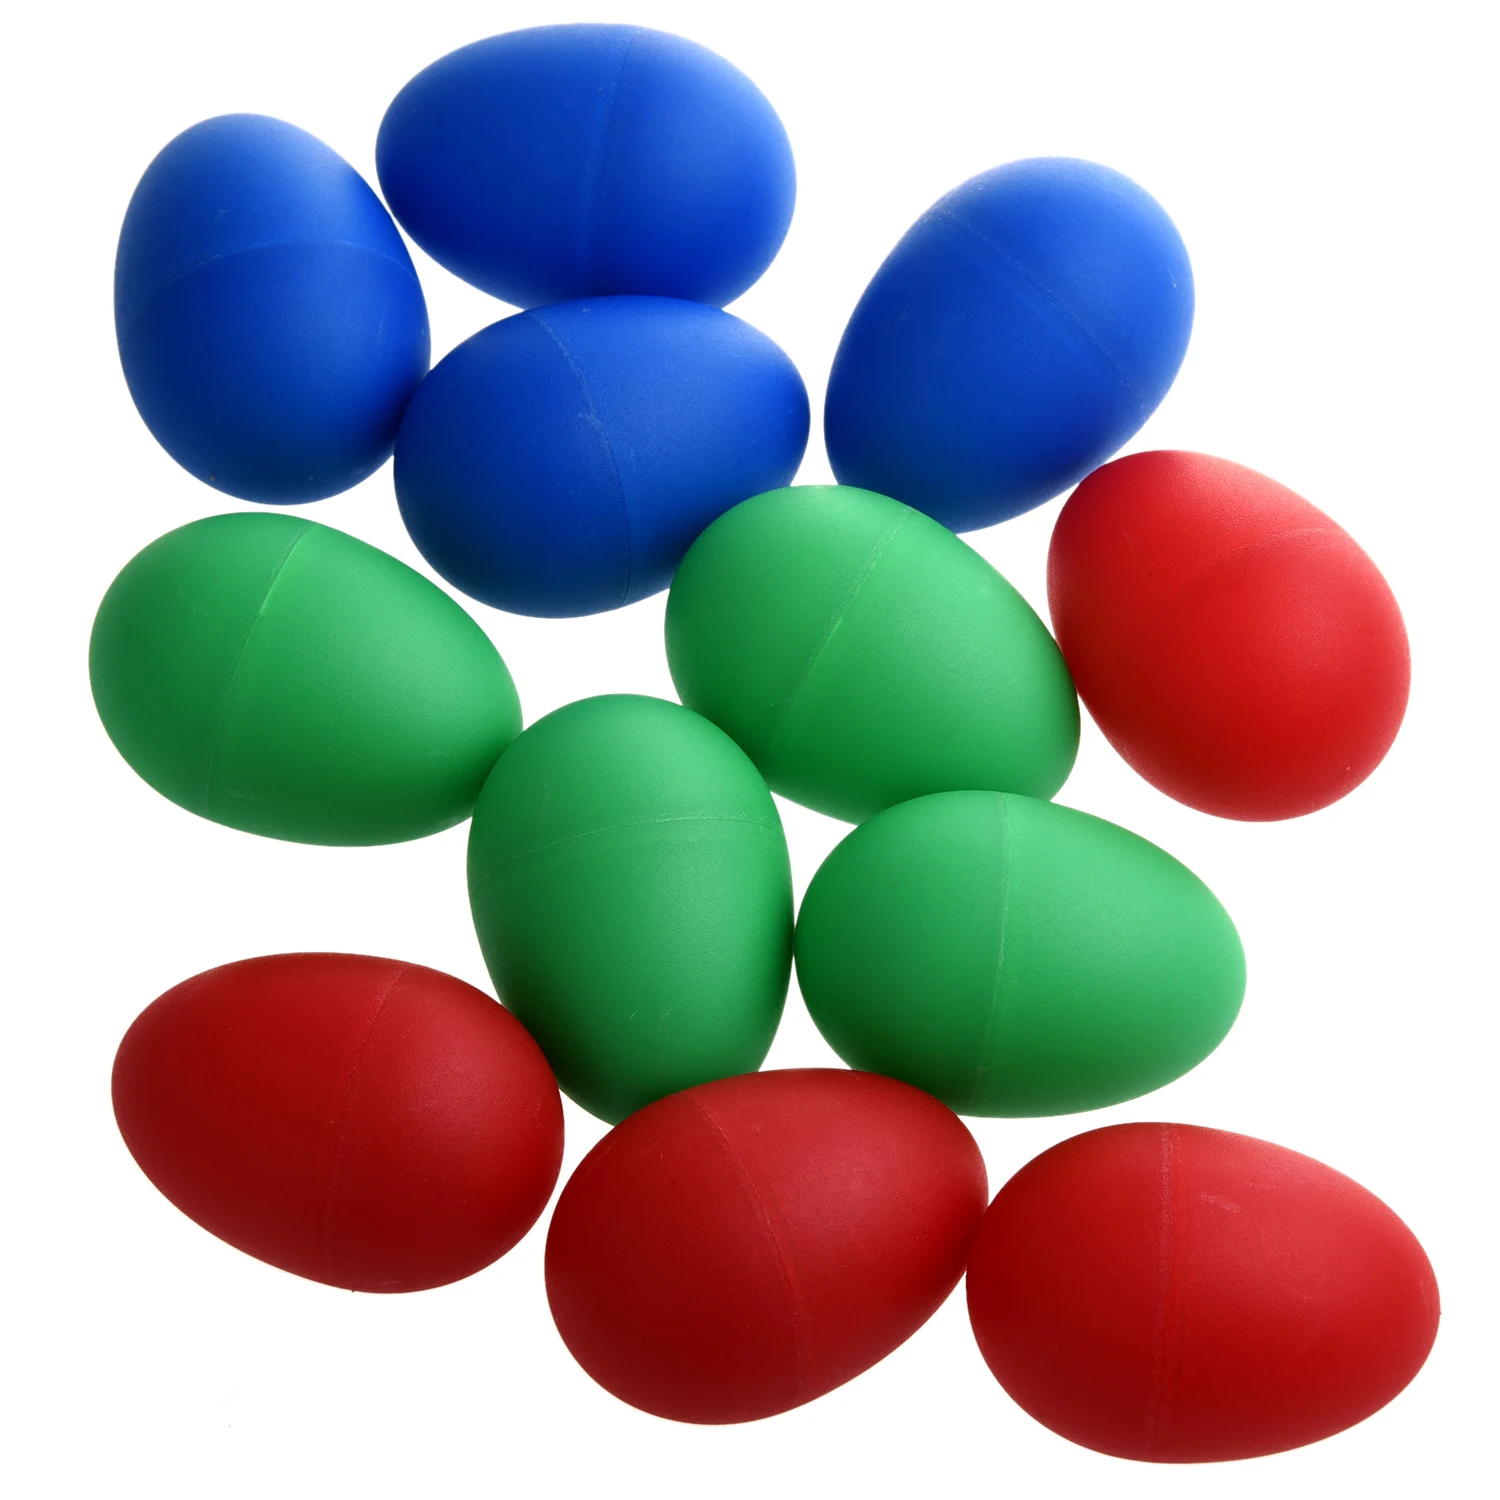 SEWS 12x Маракас яйцо пластиковые Ударные музыкальные шейкеры Цвет: синий(4 шт.), красный(4 шт.) и зеленый(4 шт